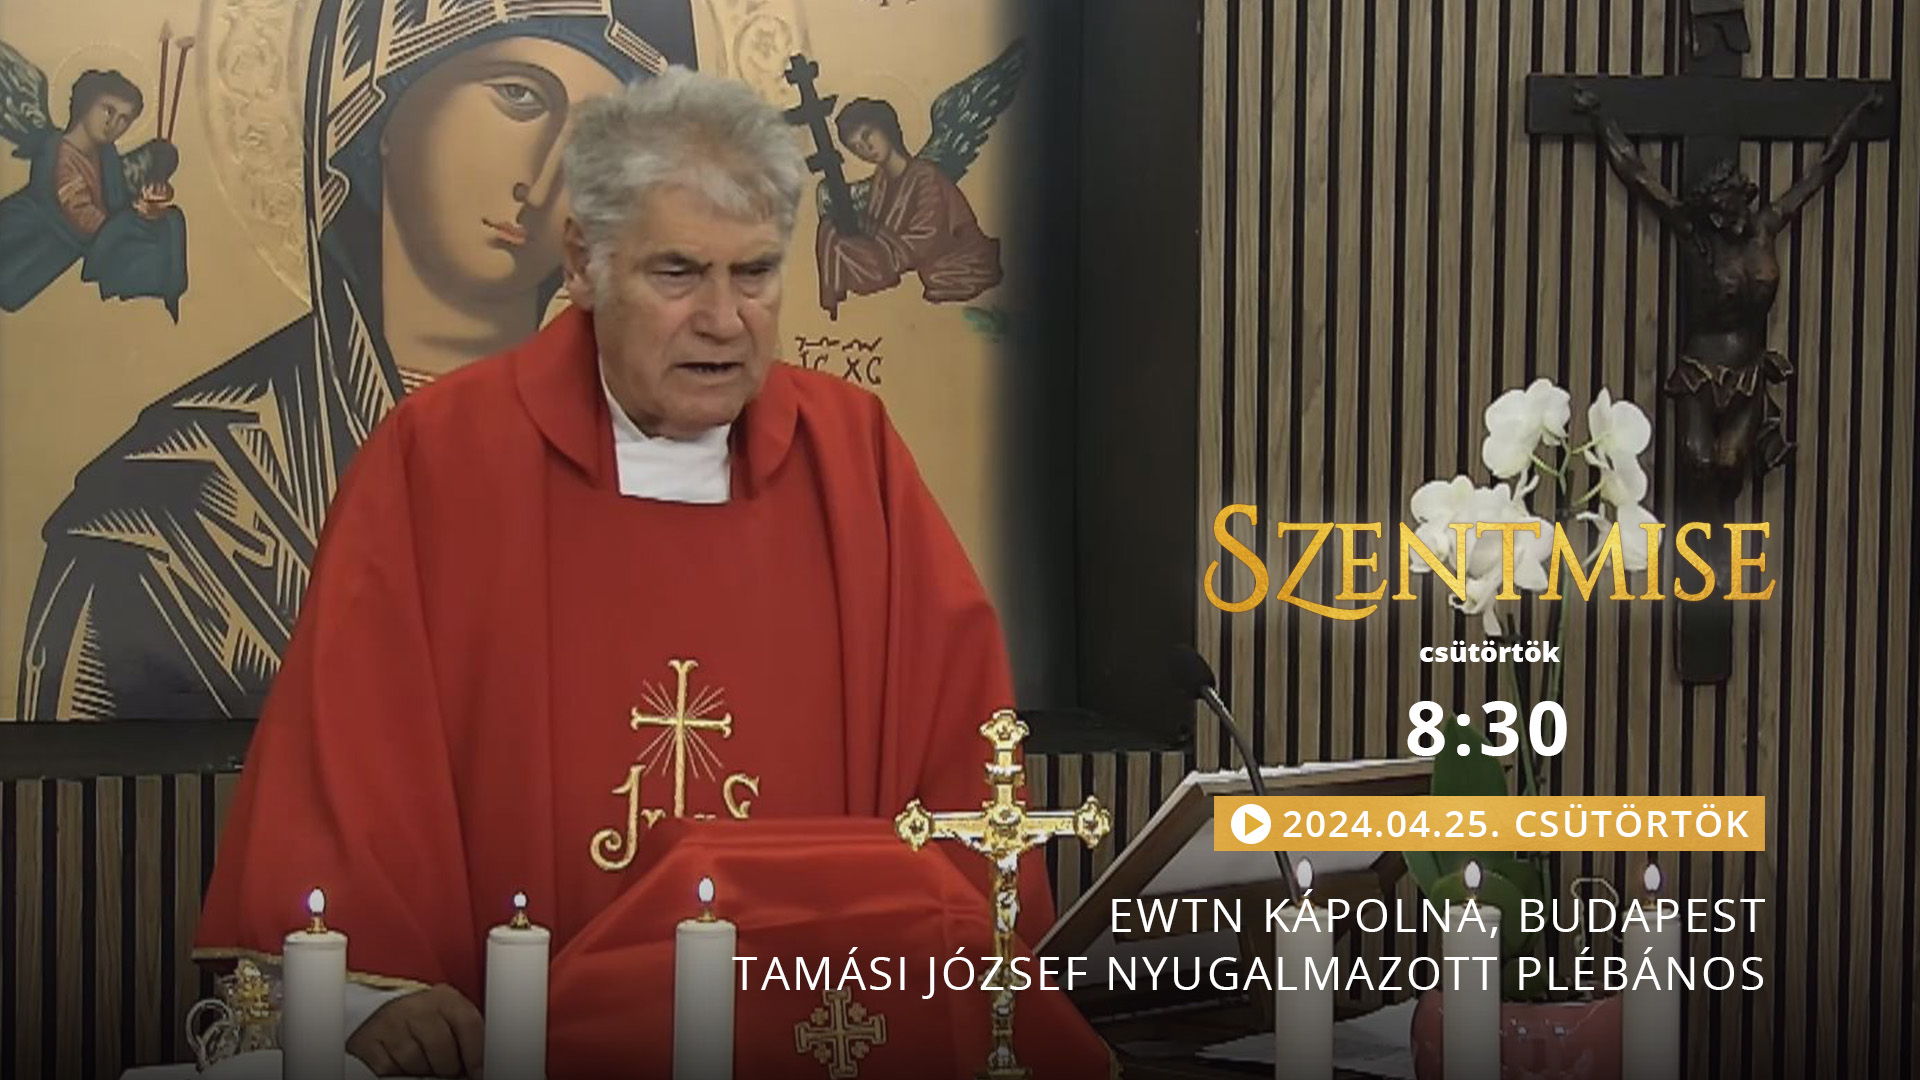 Szentmise a budapesti EWTN kápolnából – Tamási József